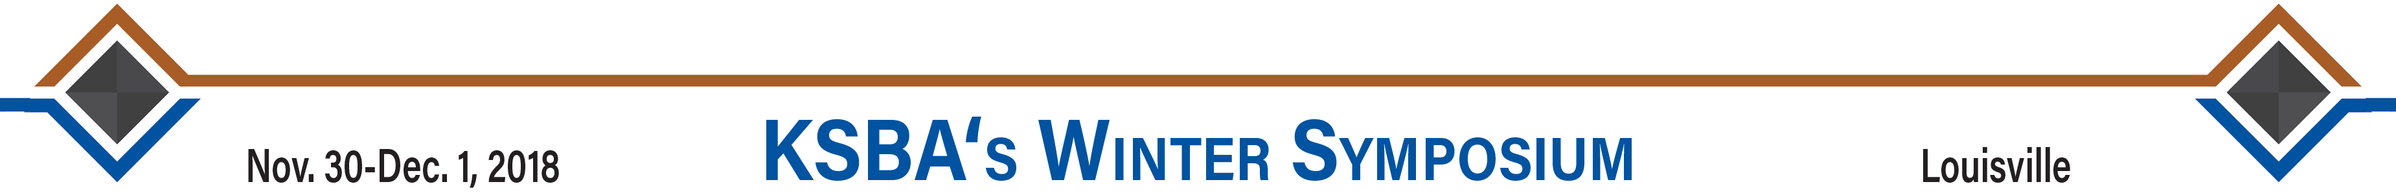 Winter Symposium 2018